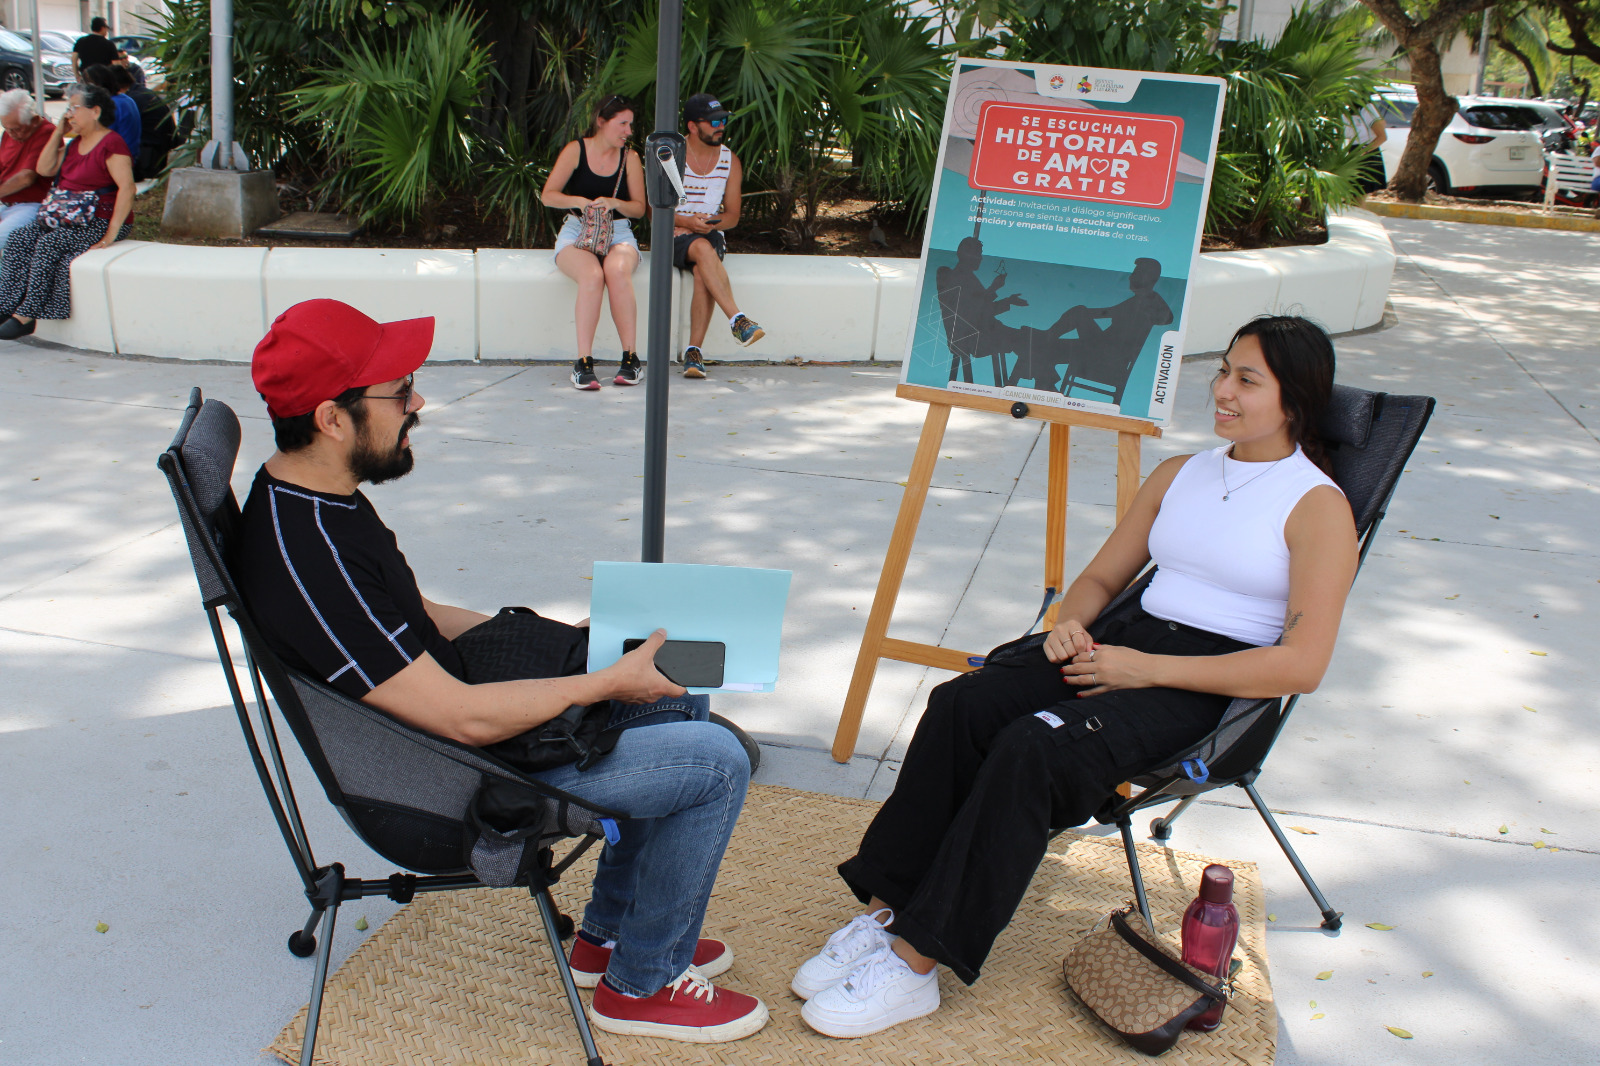 “Se escuchan historias de amor gratis” en Cancún